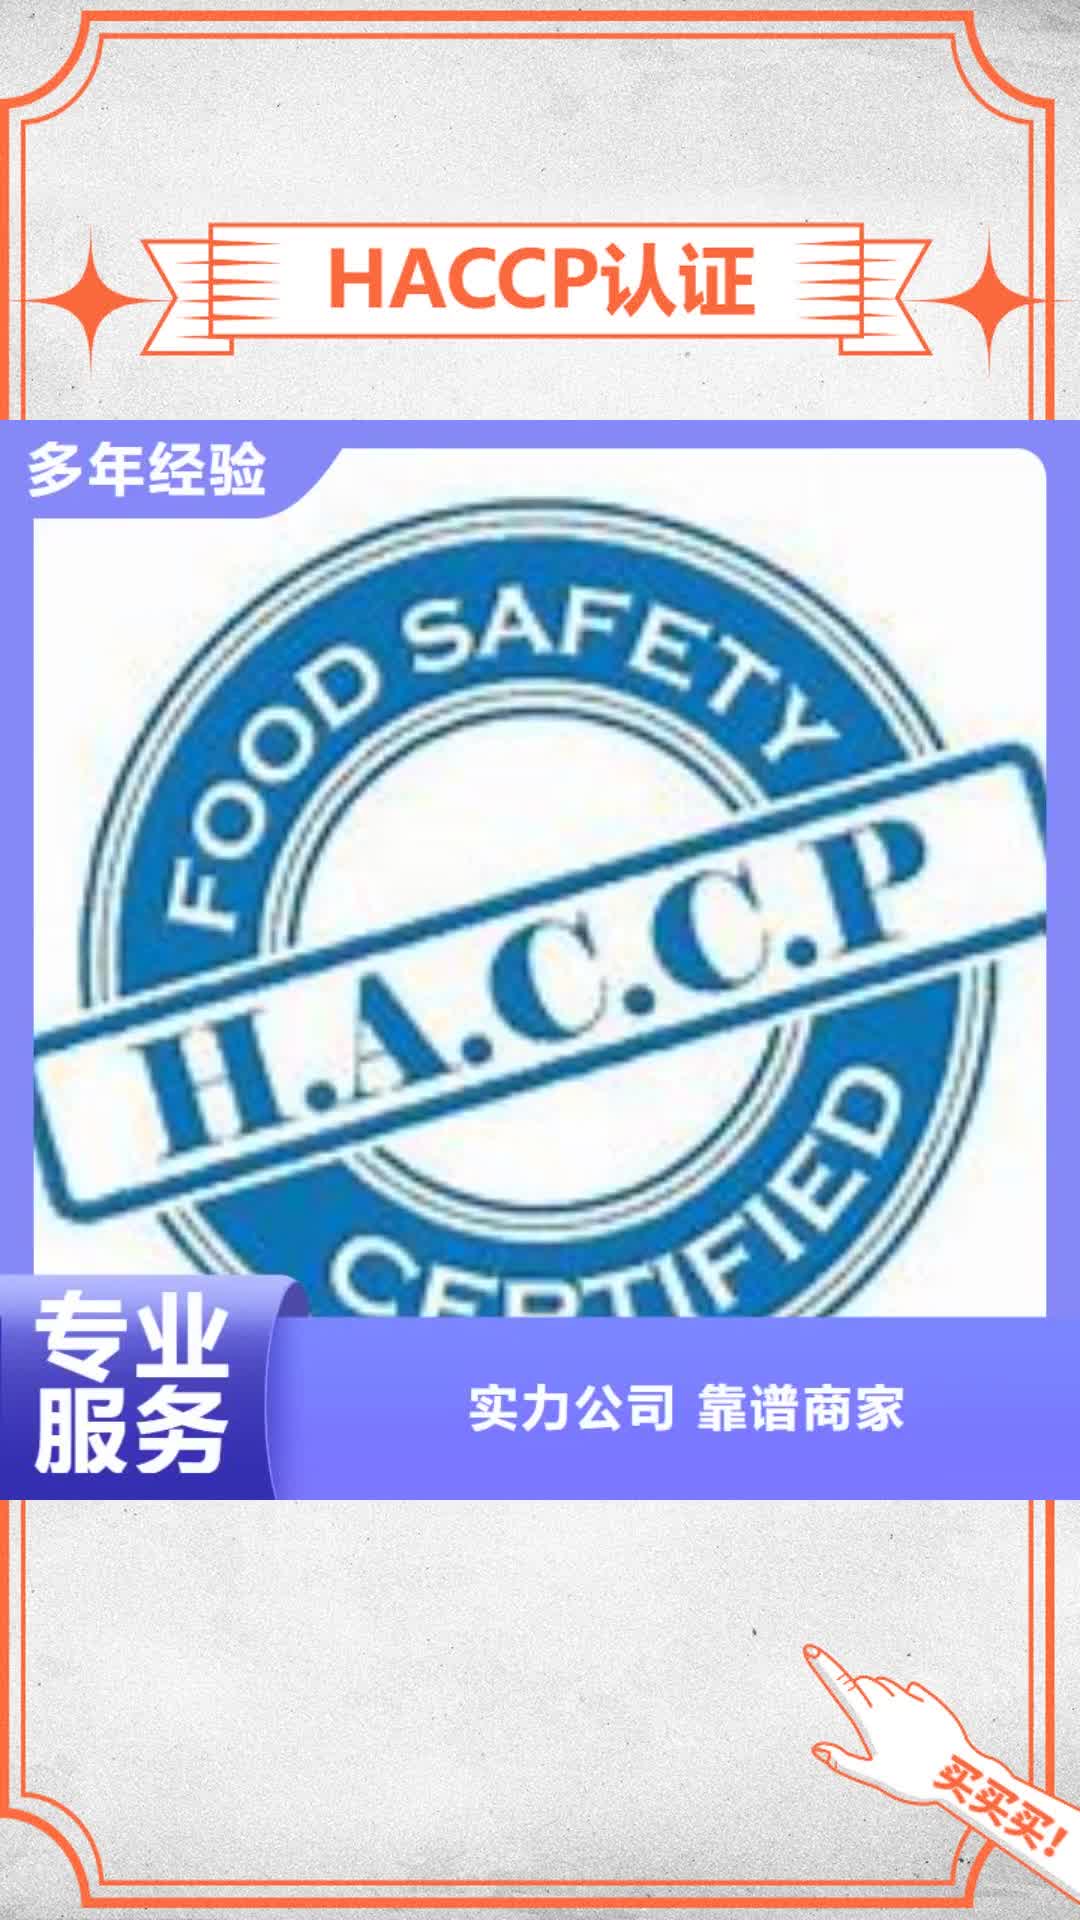 【镇江 HACCP认证,FSC认证高效】